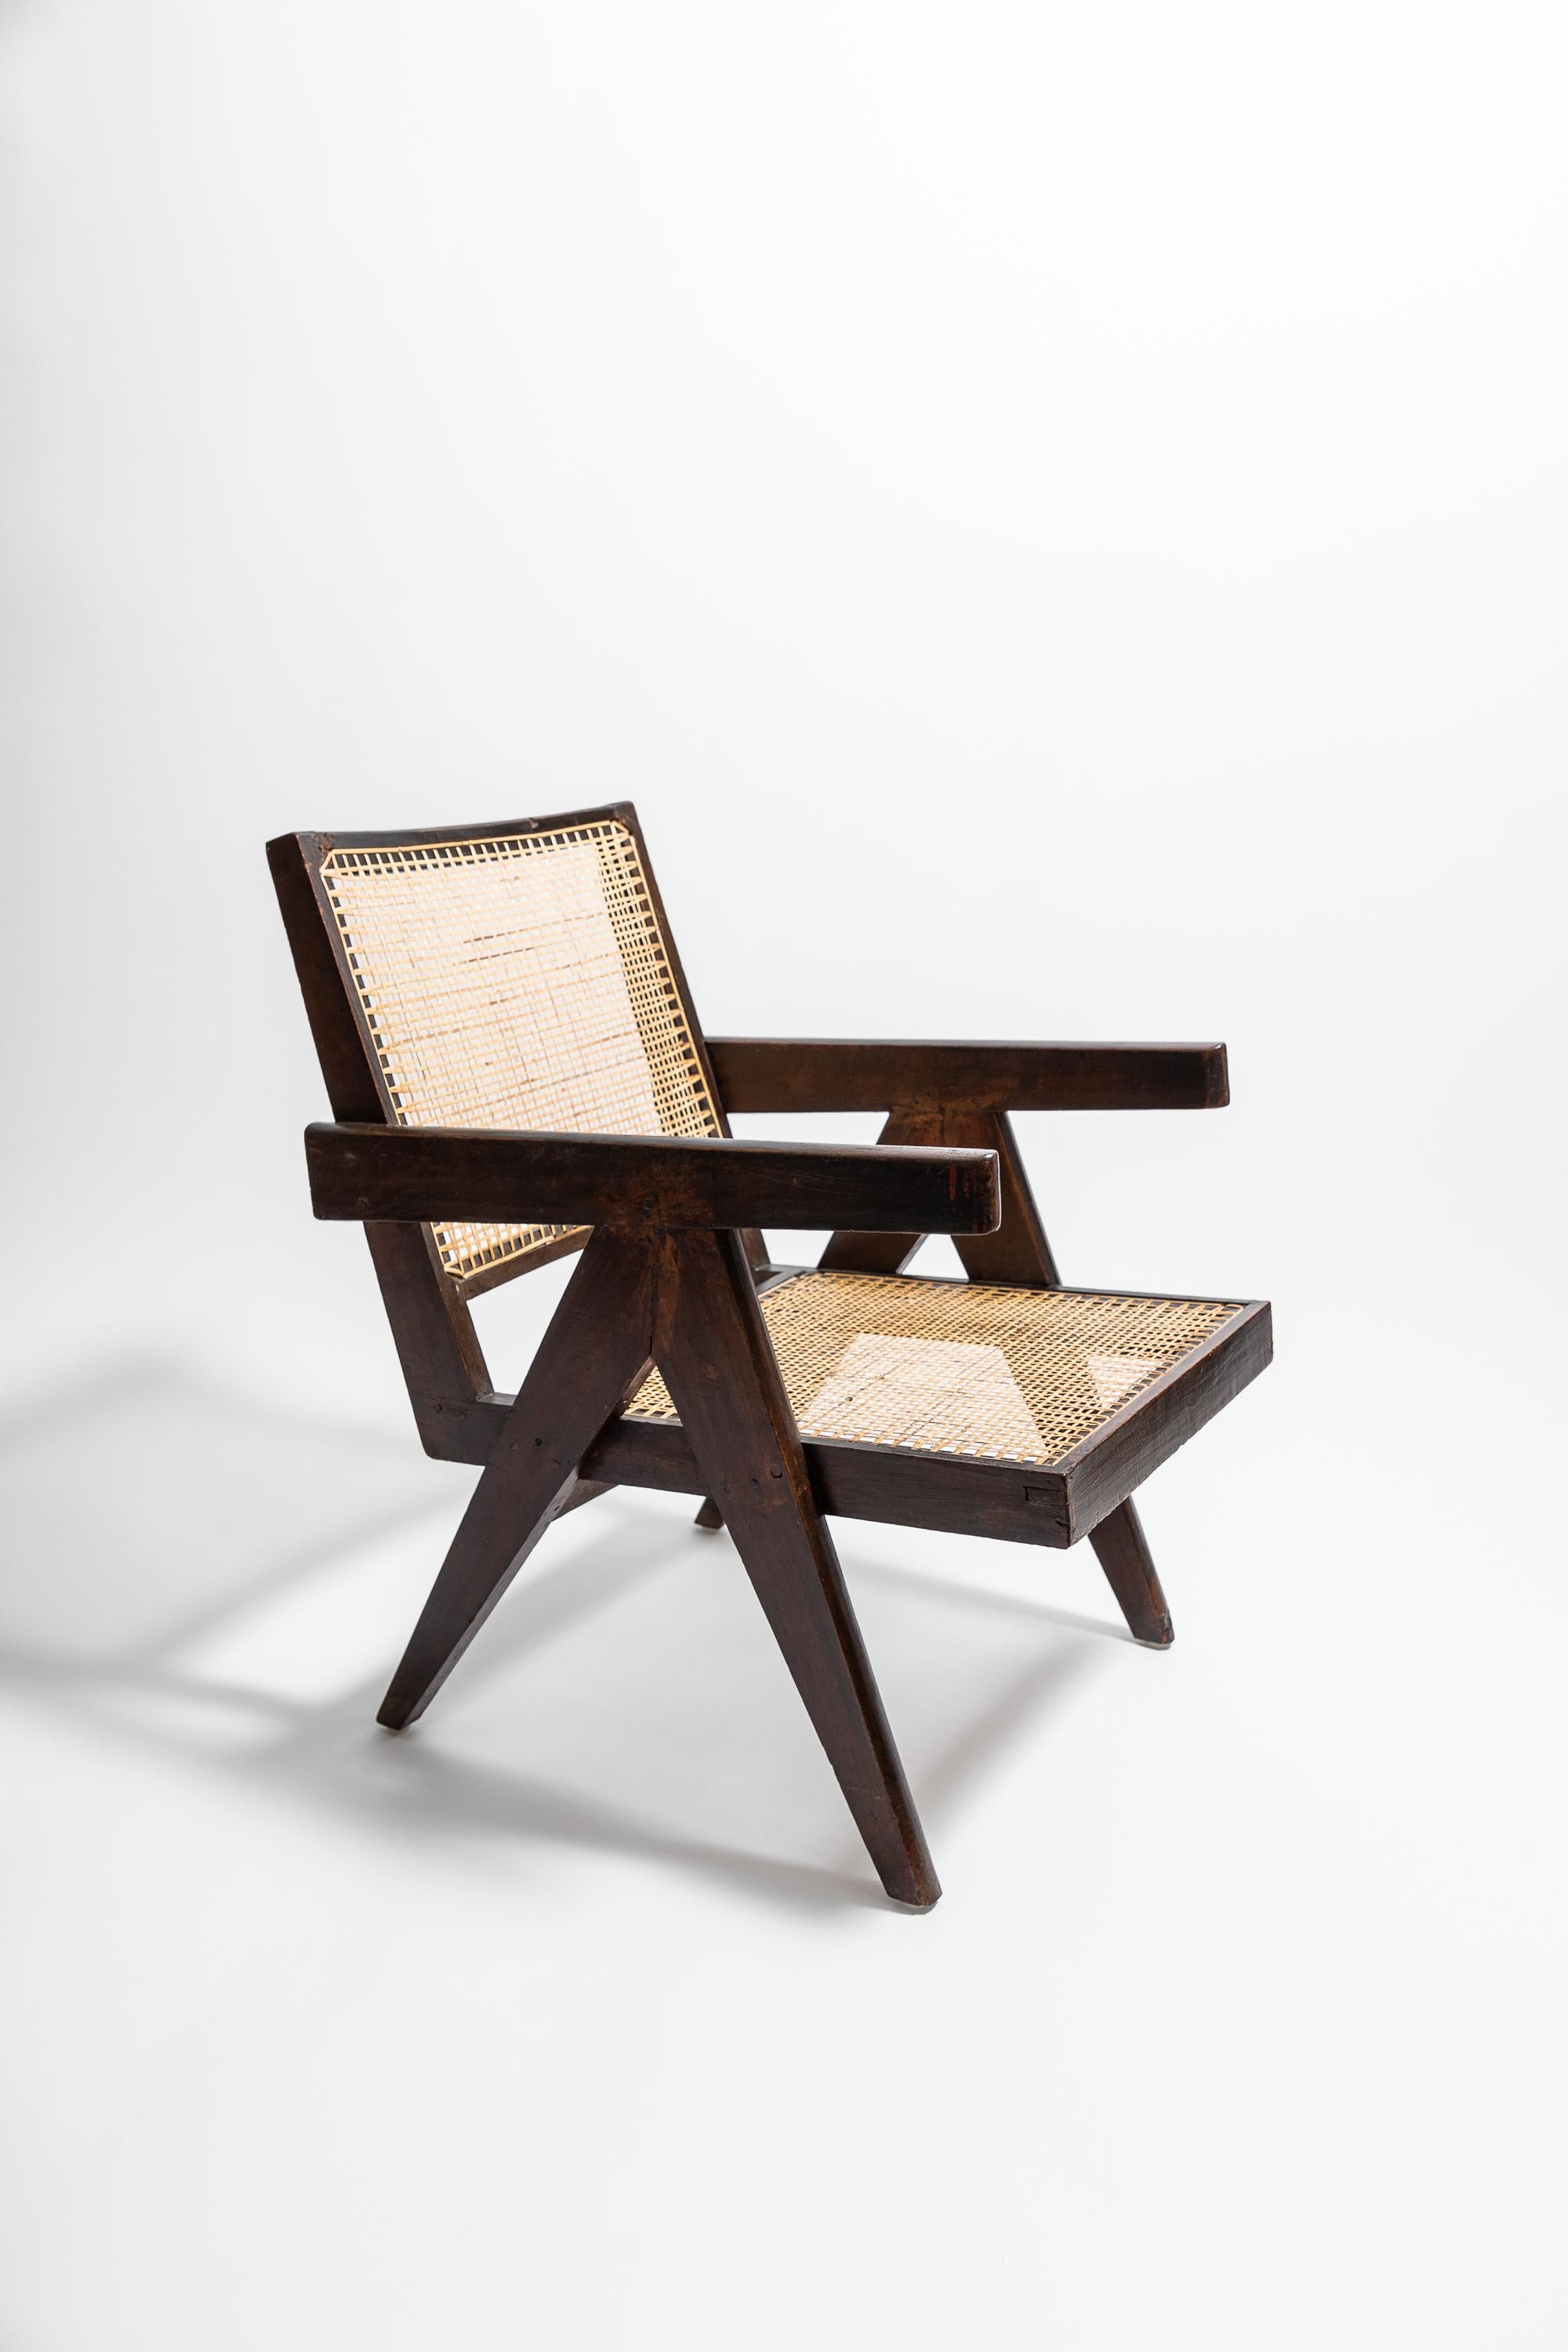 Wunderschöner originaler Easy Chair von Pierre Jeanneret. Modell-Nr. PJ-SI-29-A. Der Easy Chair ist ein Meisterwerk des modernistischen Designs, bequem und praktisch. Er zeigt Jeannerets ikonischen 